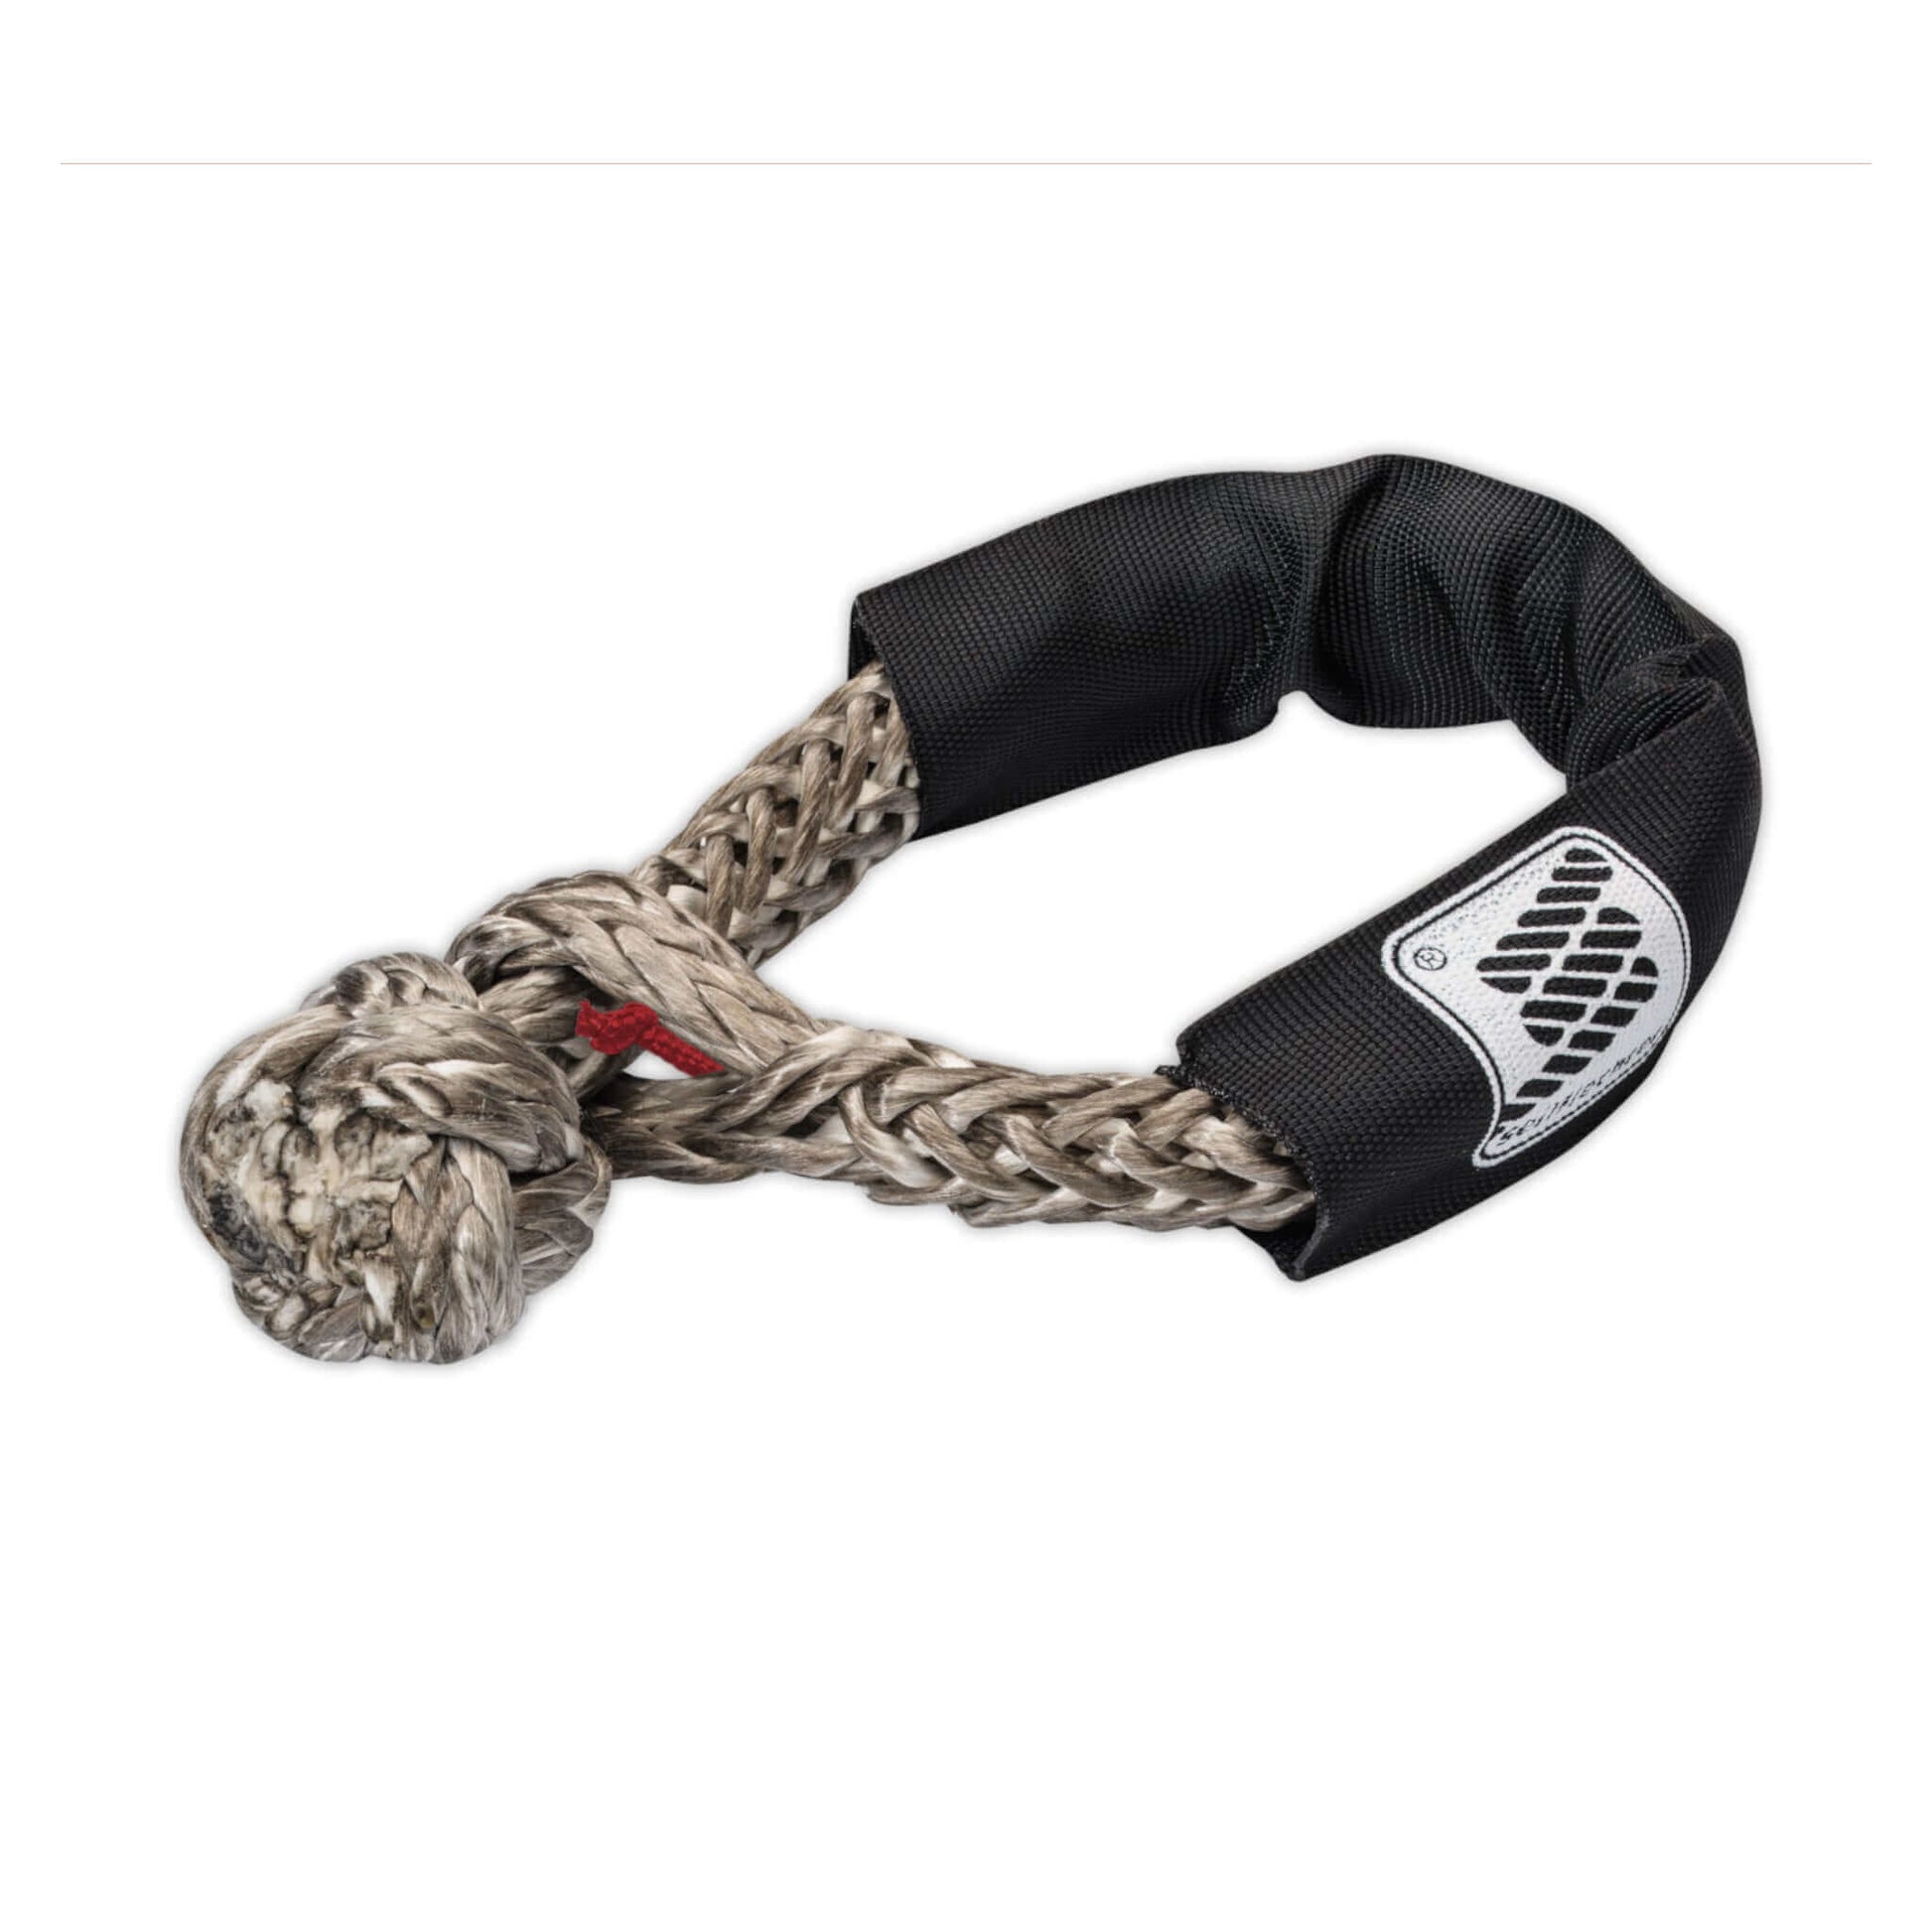 Seilflechter Novoleen® cordage shackle / soft shackle